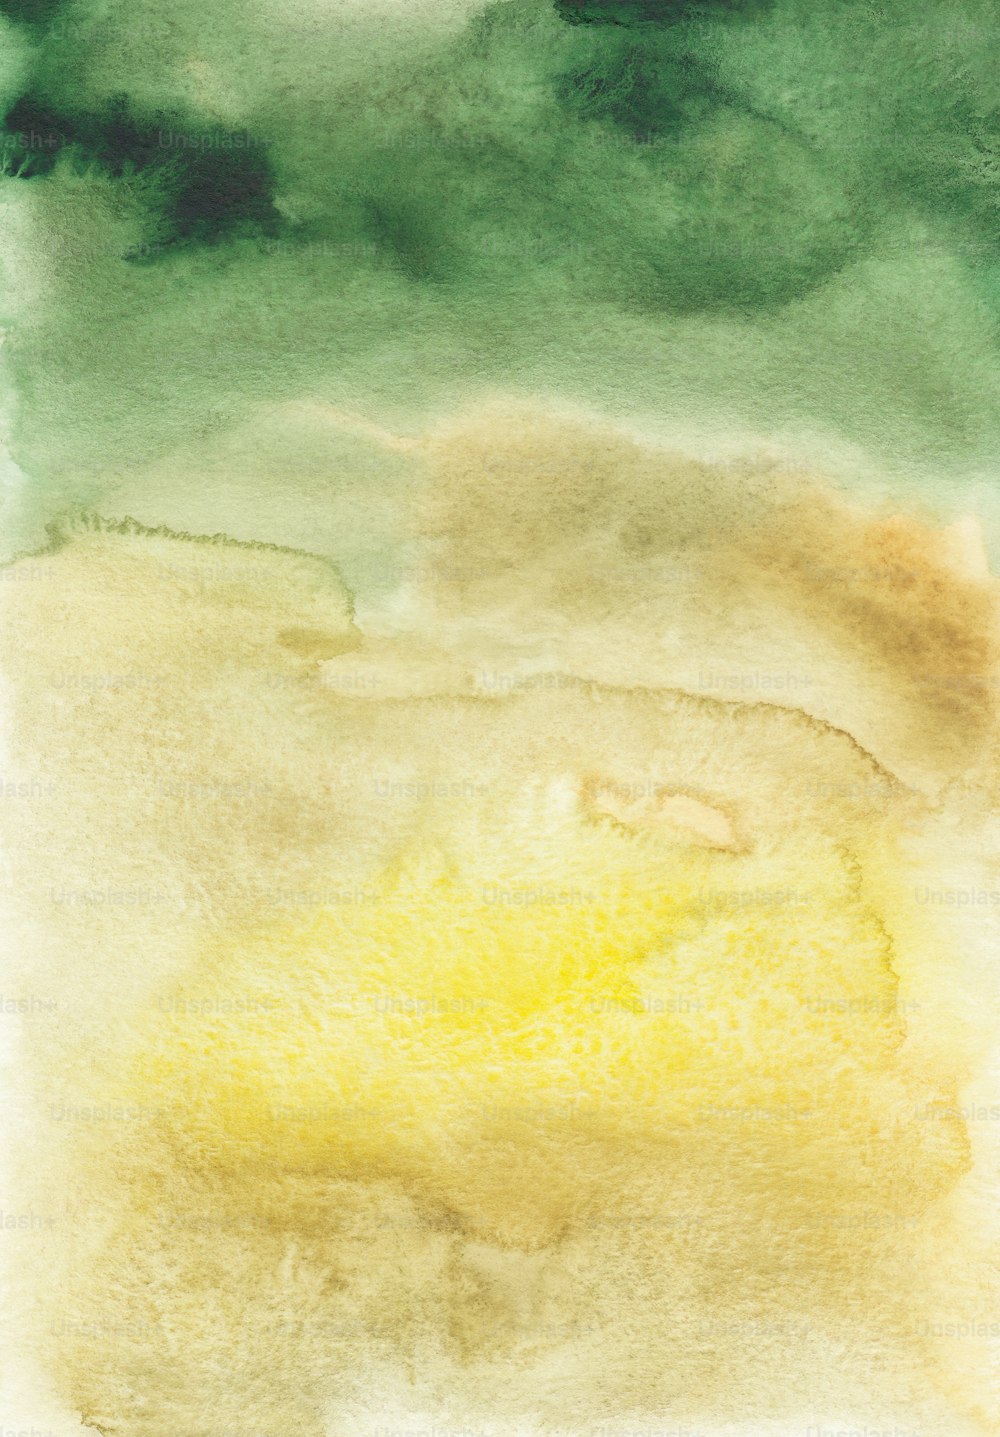 un dipinto ad acquerello di un'area gialla e verde